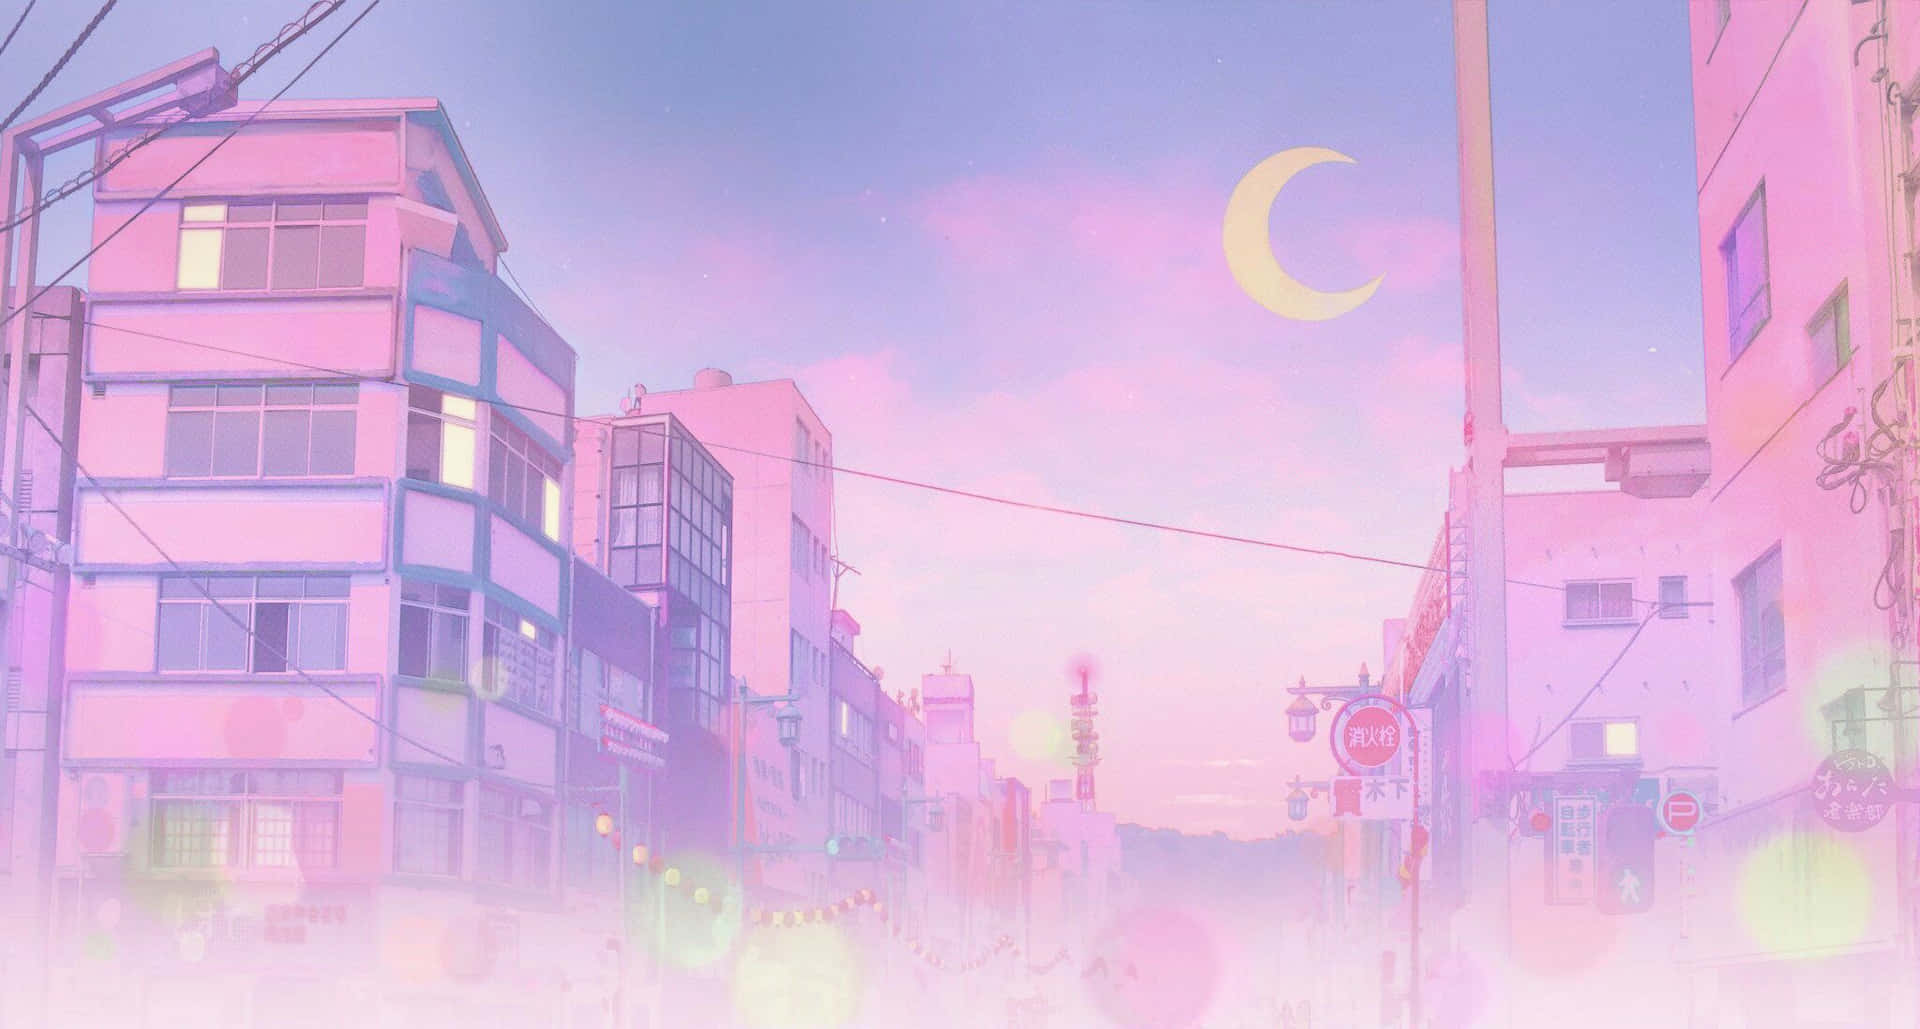 Dolcee Morbido, Una Bellissima Illustrazione Di Aesthetic Pink Anime.